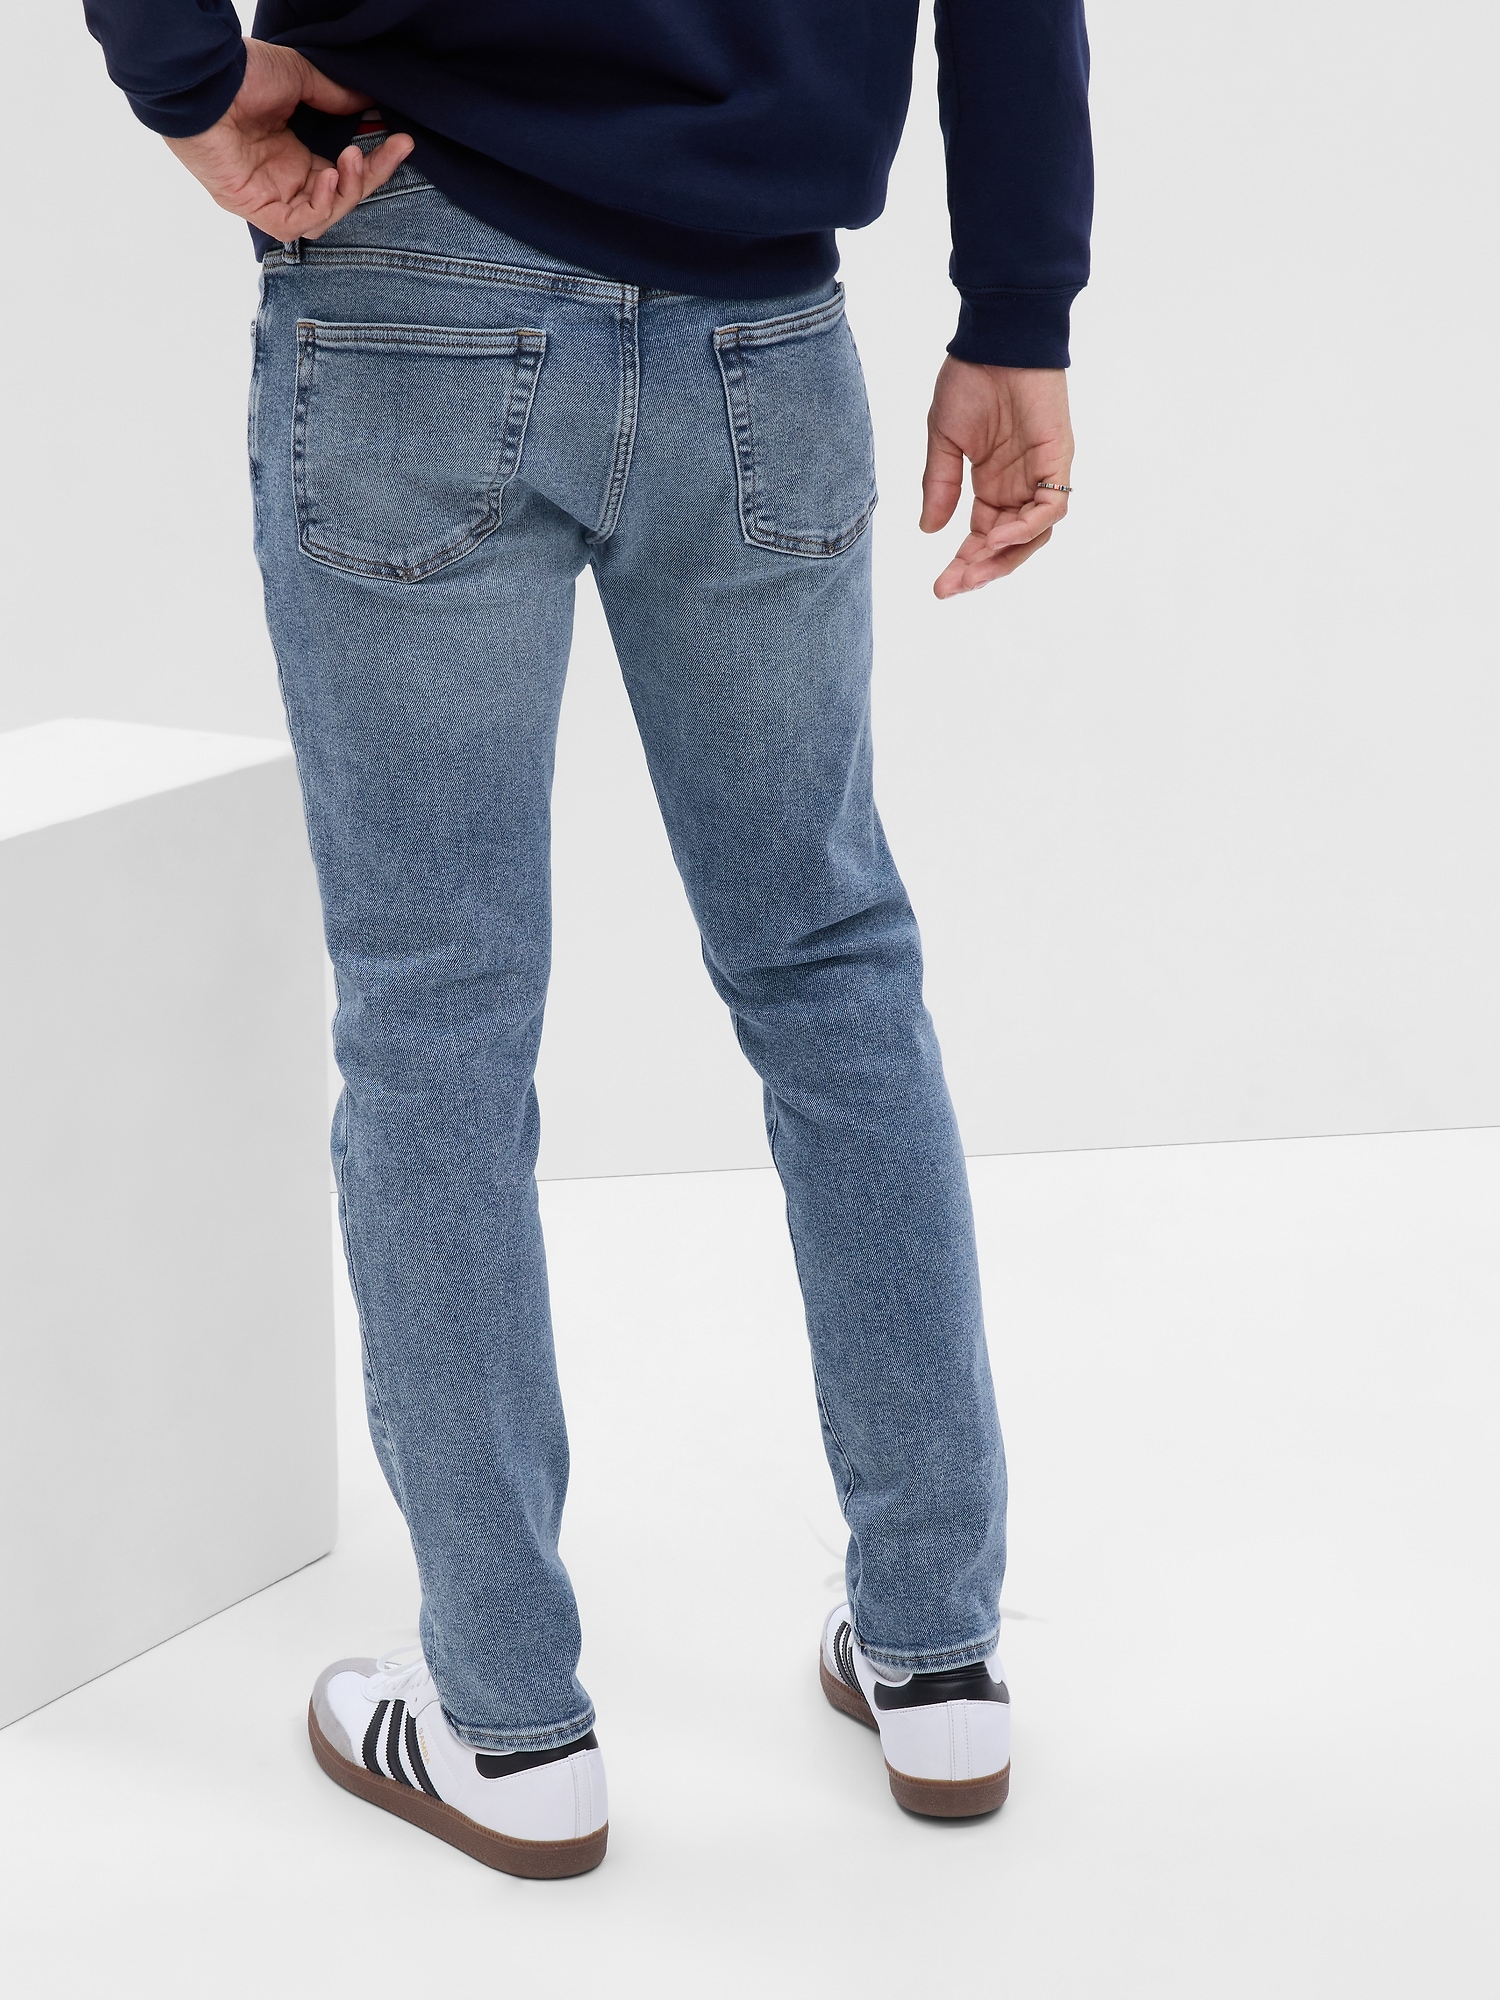 Gap Mens Everyday Slim Jeans GapFlex Stretch Denim Resin Rinse